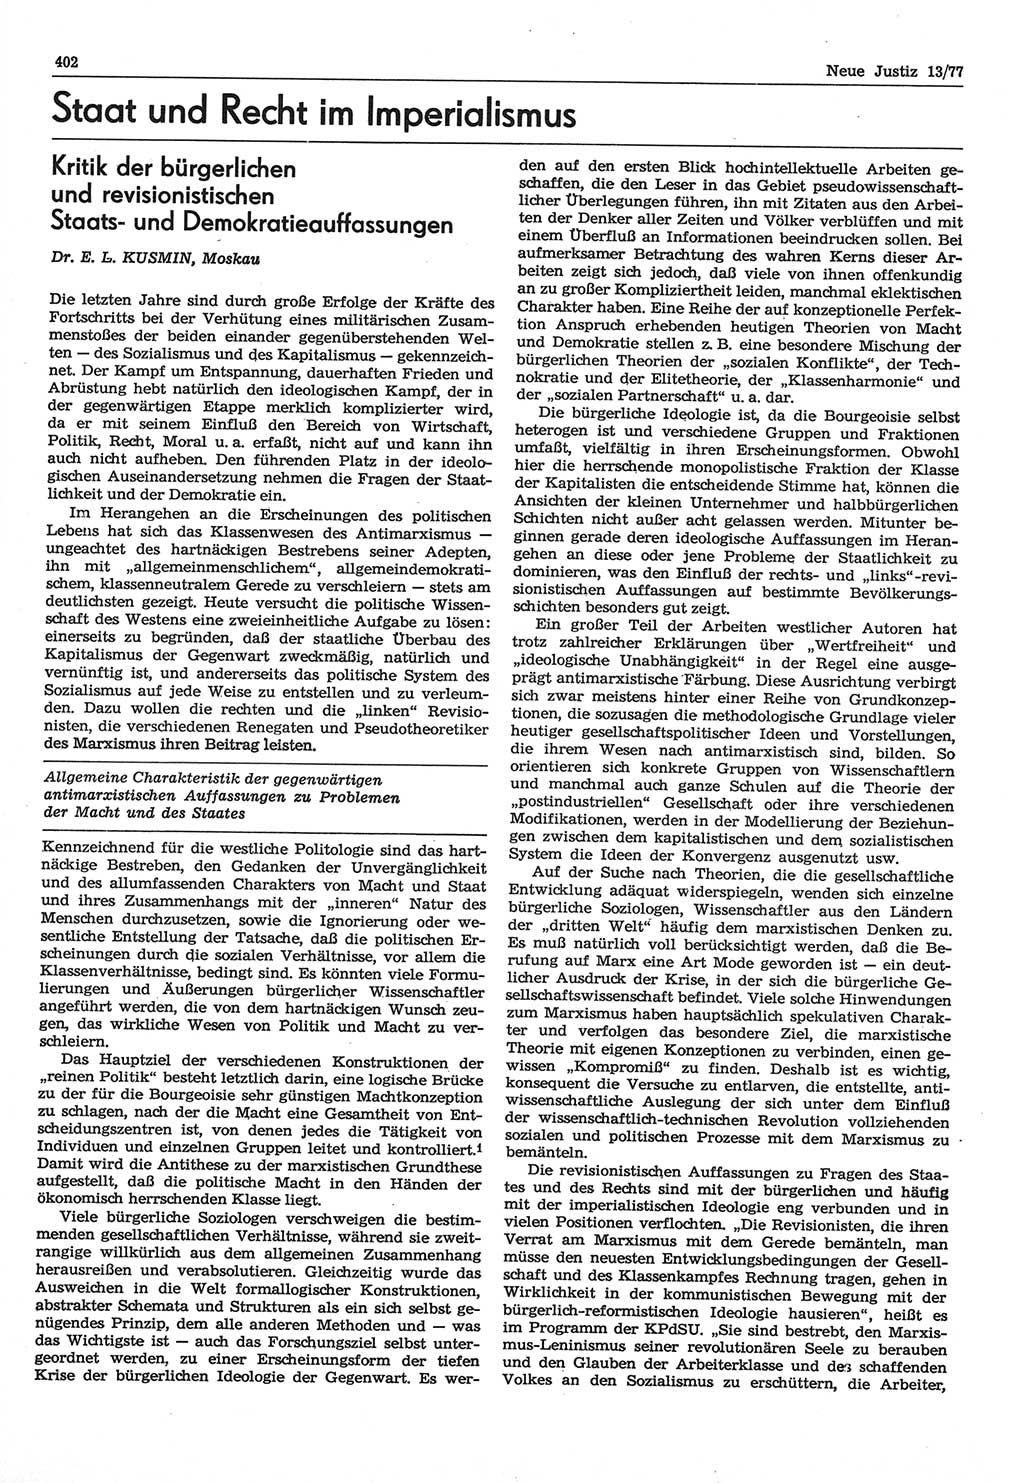 Neue Justiz (NJ), Zeitschrift für Recht und Rechtswissenschaft-Zeitschrift, sozialistisches Recht und Gesetzlichkeit, 31. Jahrgang 1977, Seite 402 (NJ DDR 1977, S. 402)